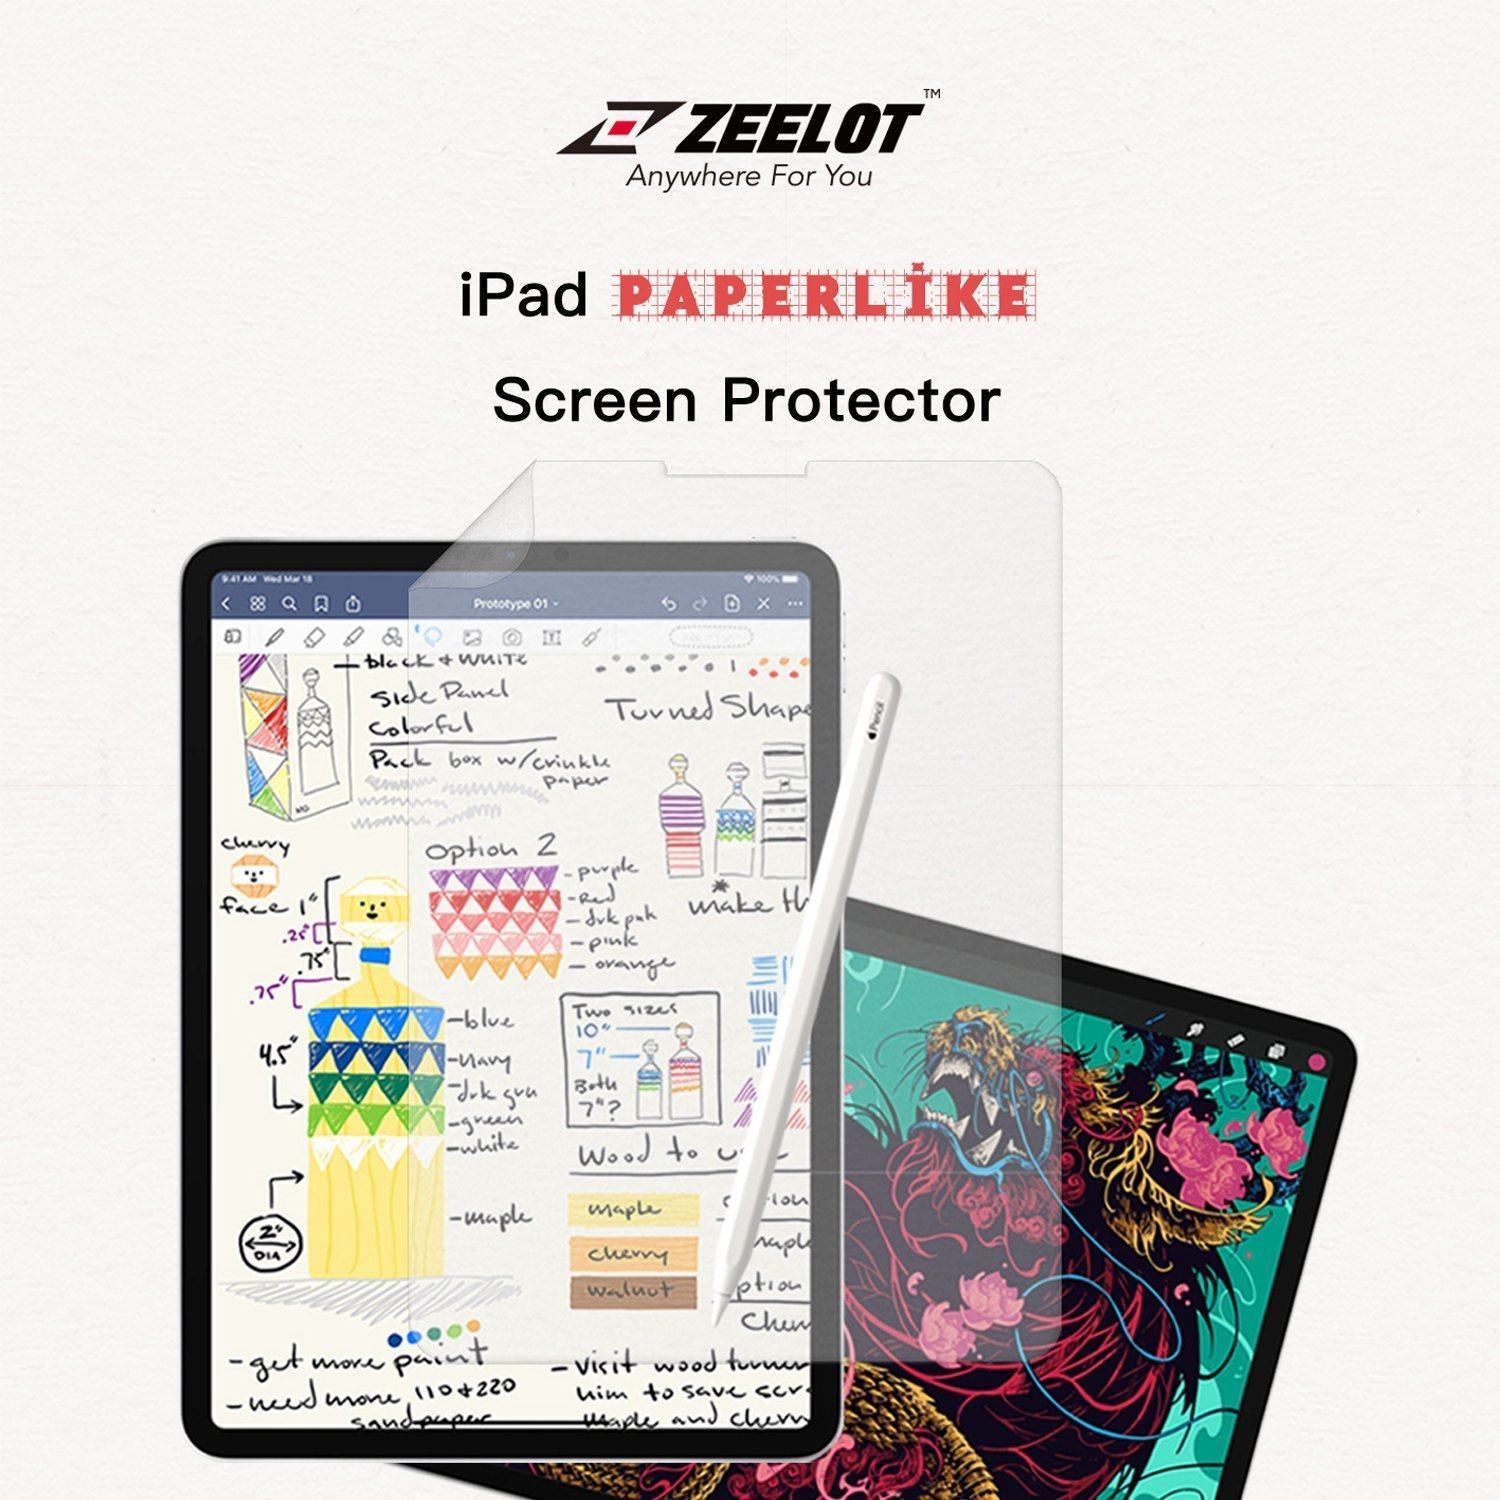 ZEELOT Paper Like Screen Protector for iPad 10.5" (2019/2017), Clear Default ZEELOT 